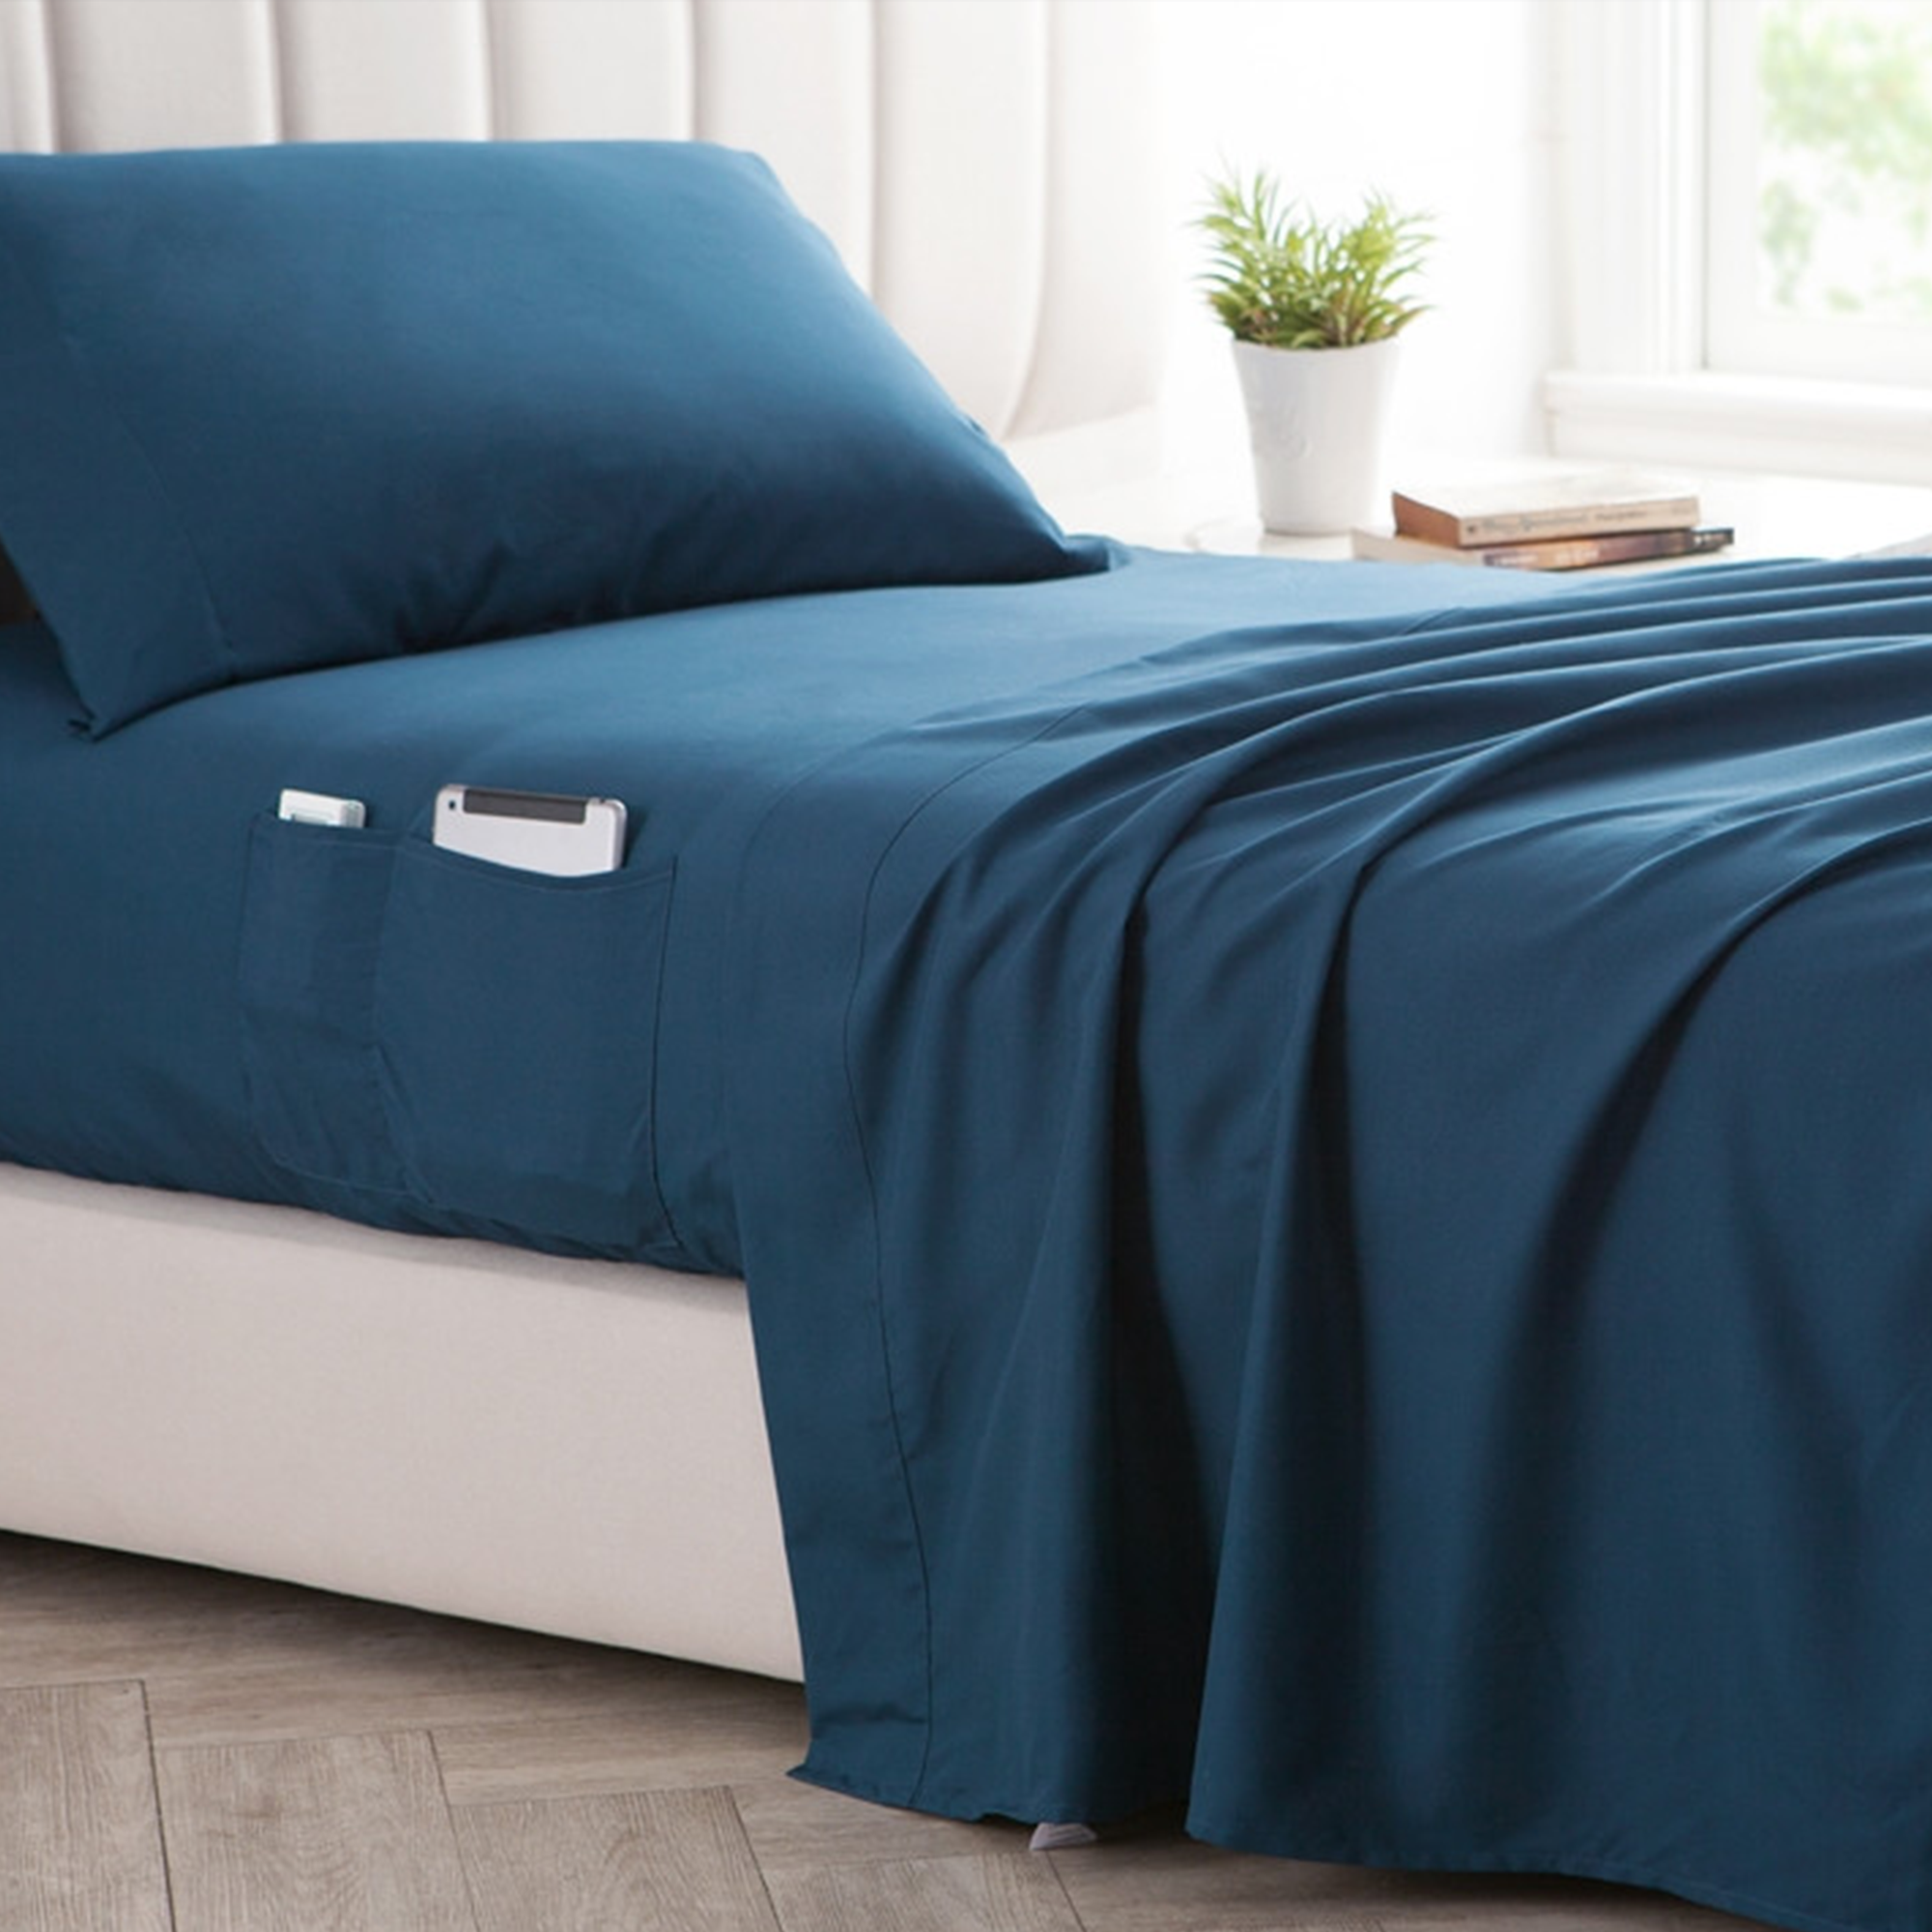 Unique Bedside Pocket Bedroom Storage with Super Soft Microfiber Navy Blue Twin Extra Large Sheet Set